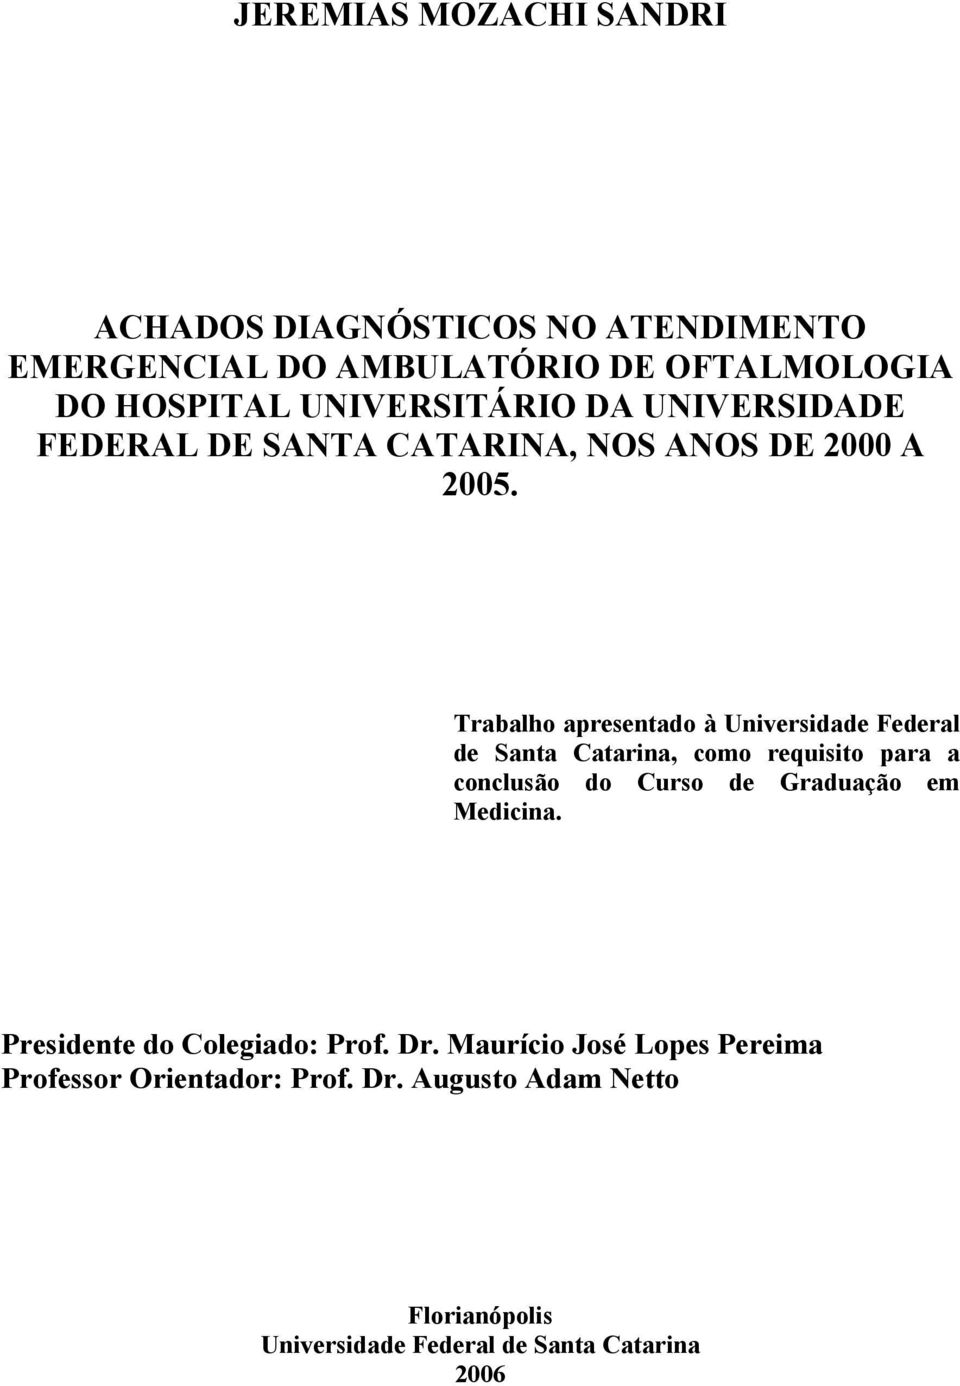 Trabalho apresentado à Universidade Federal de Santa Catarina, como requisito para a conclusão do Curso de Graduação em